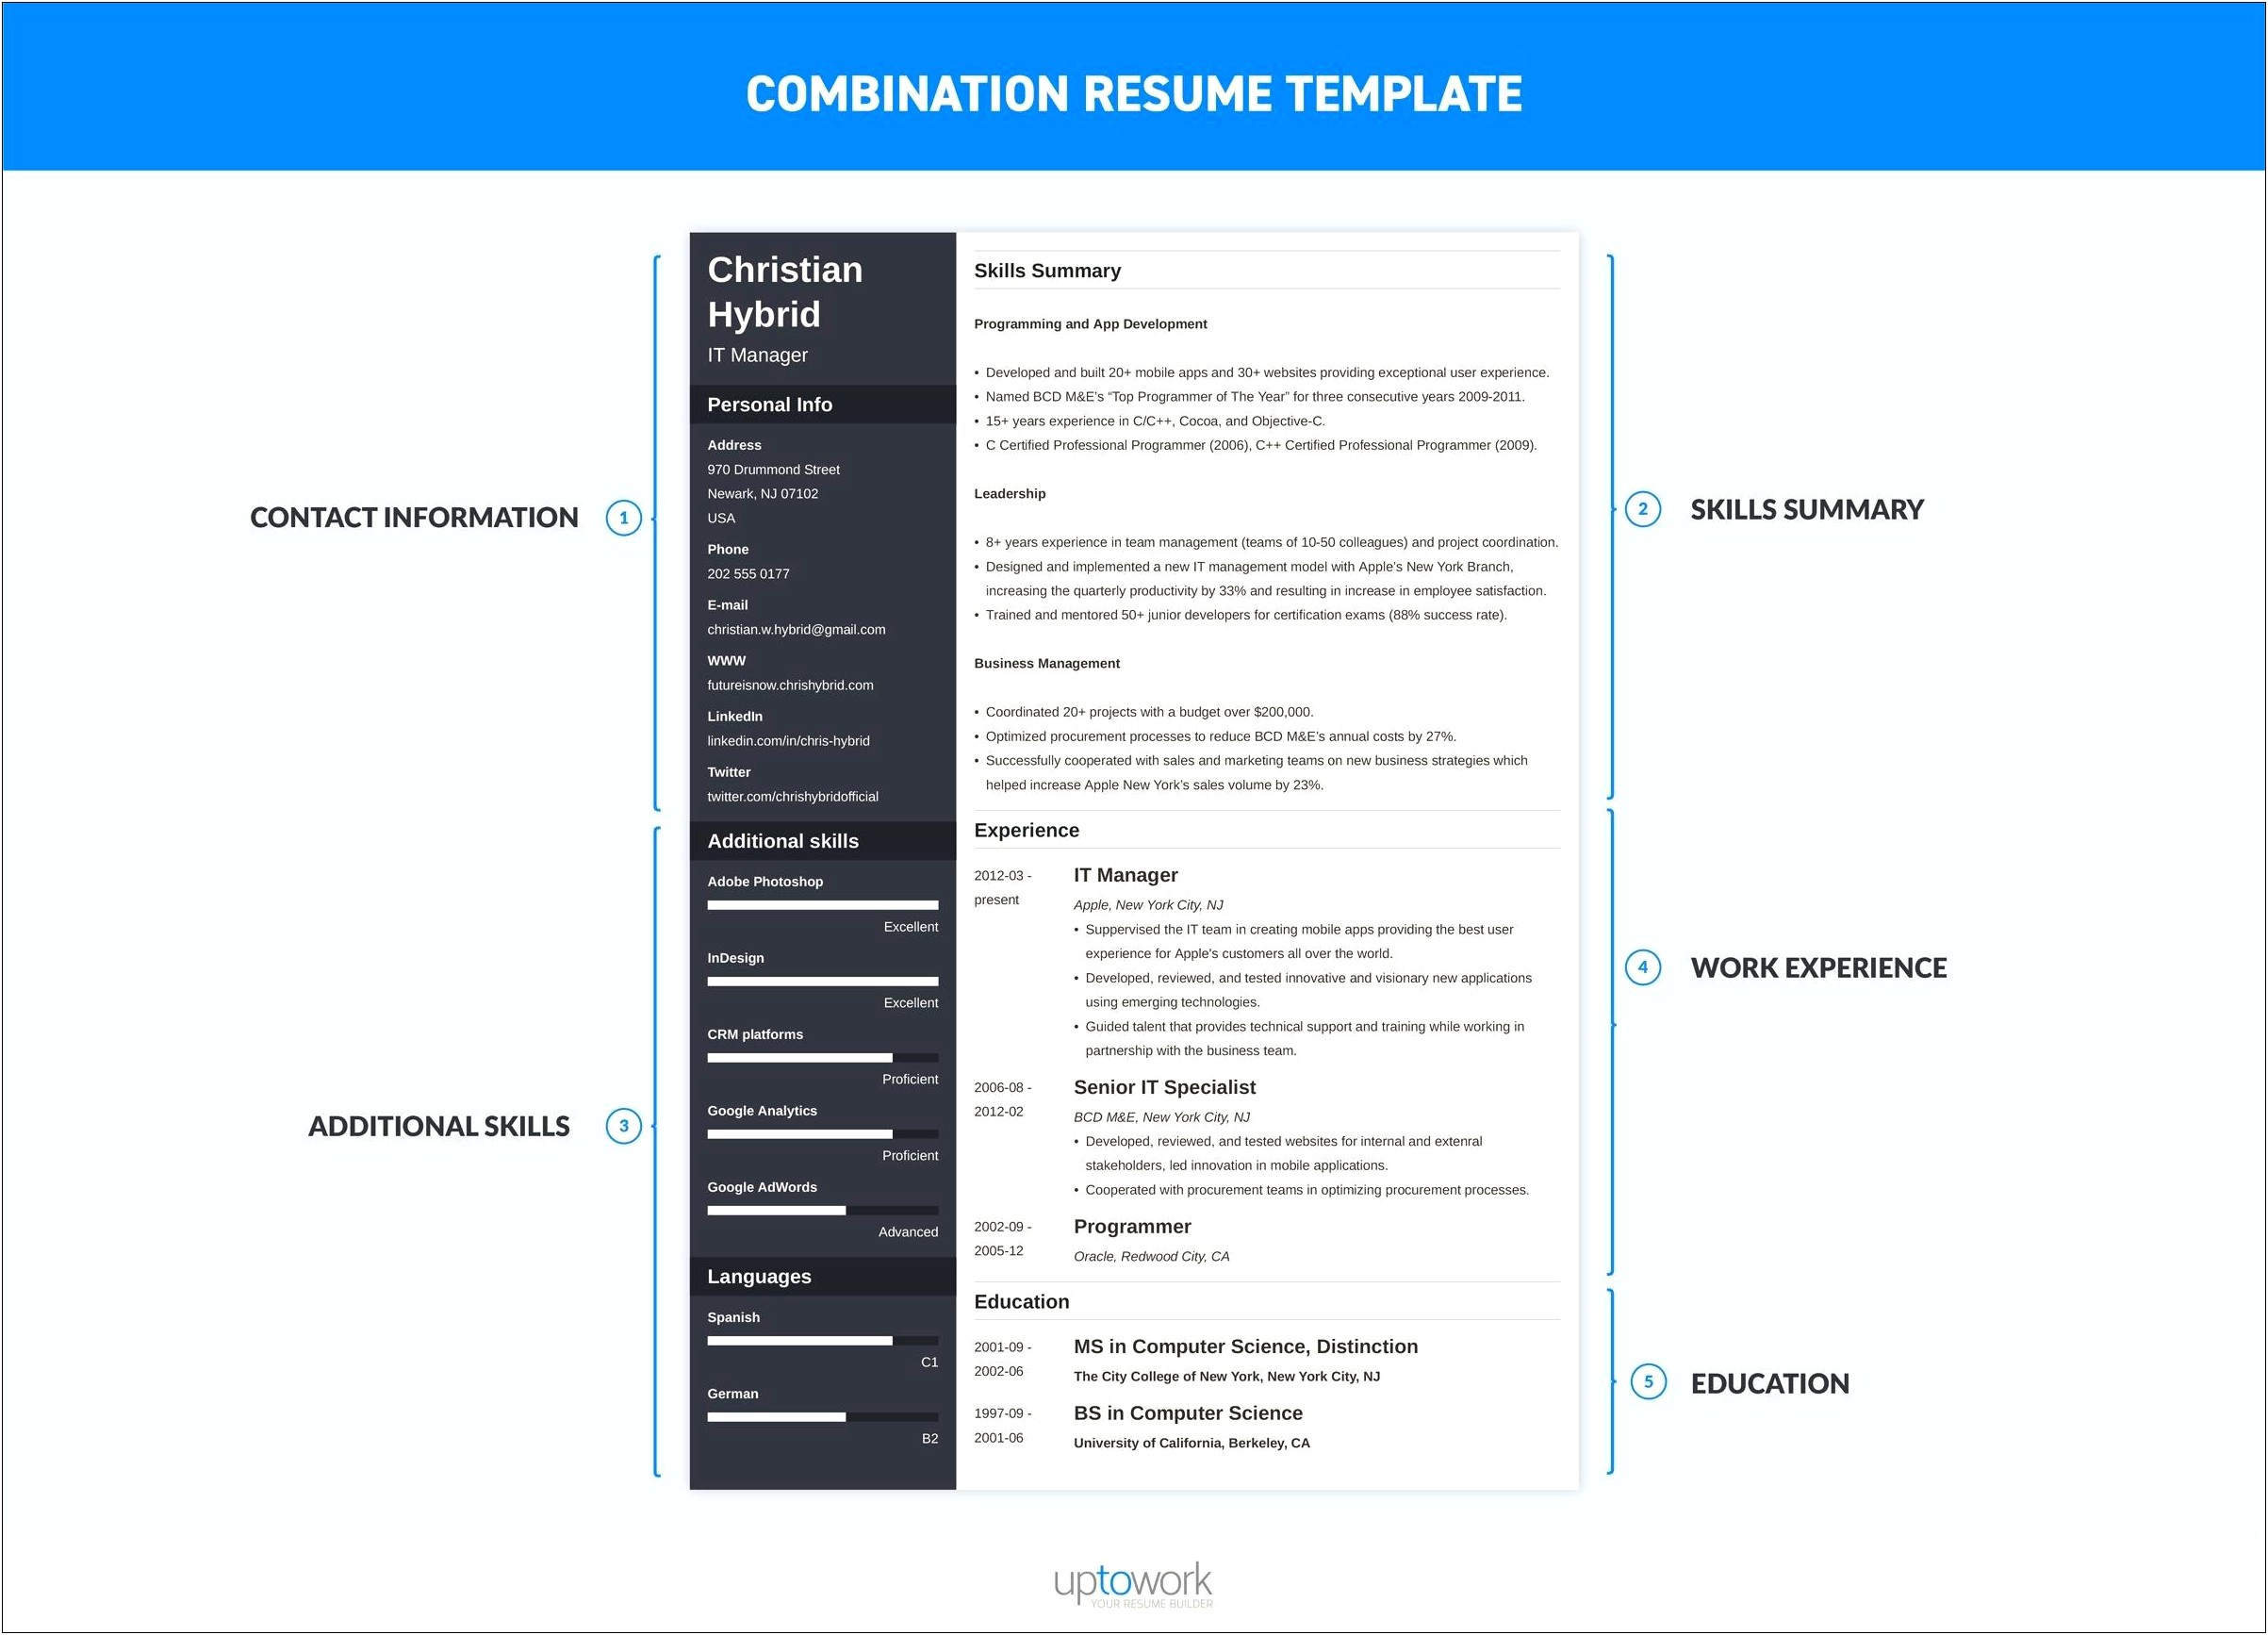 Resume Combining Summary And Skills